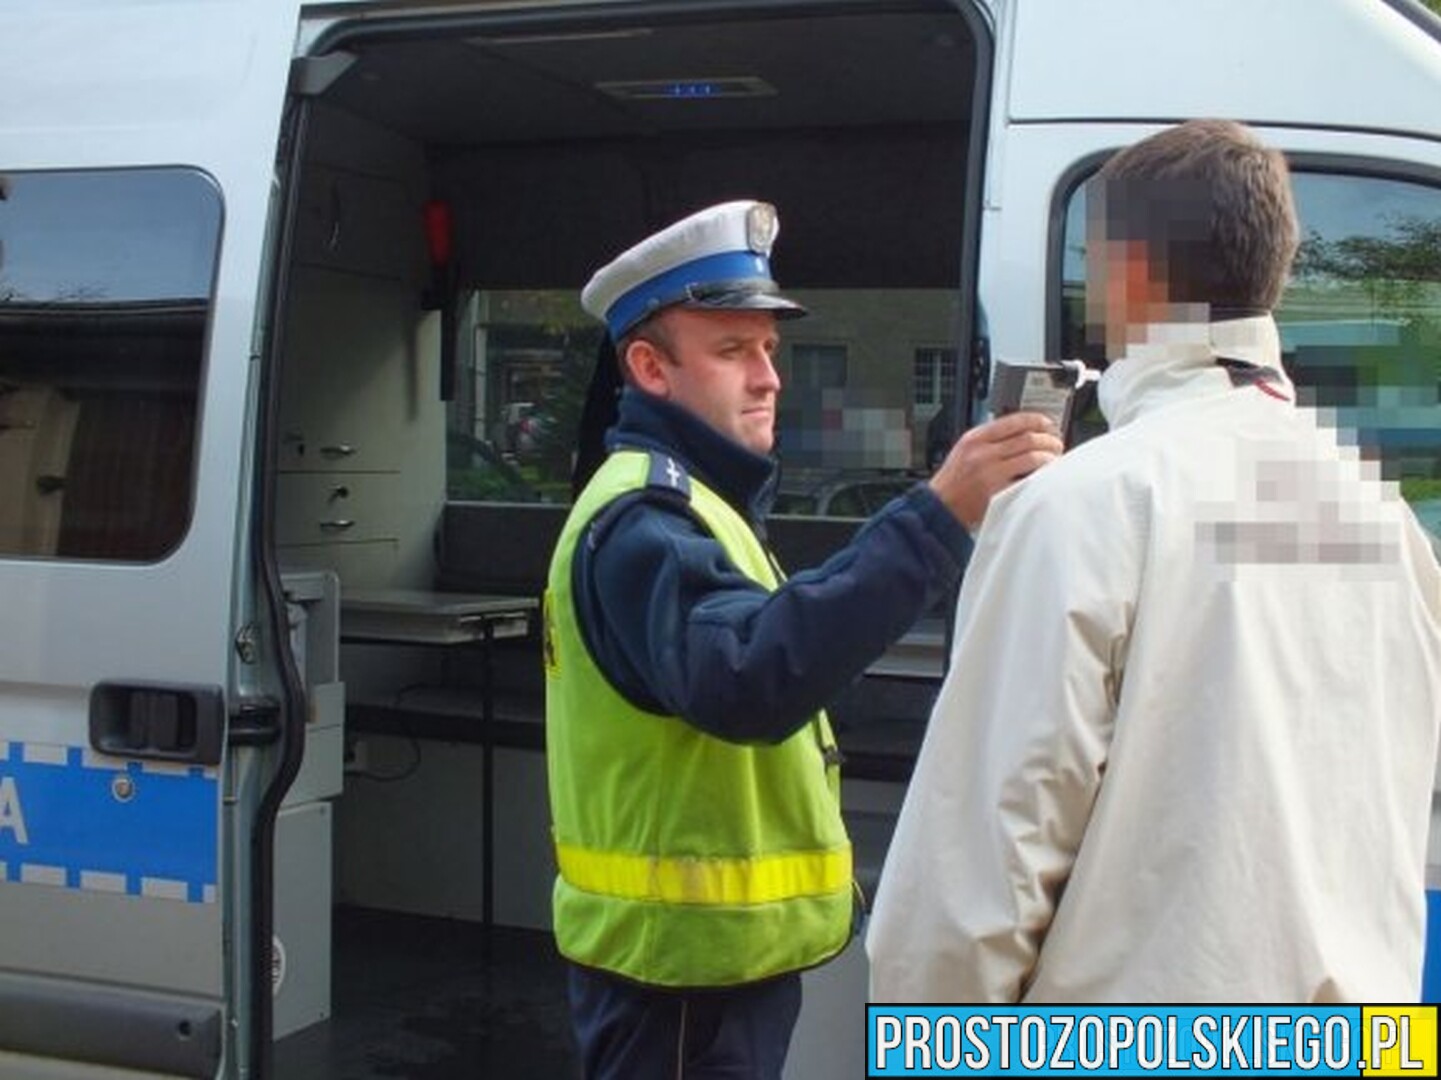 64-latni kierowca ciężarówki został zatrzymany przez policjantów na dk11.Badanie wykazało ponad 2 promile.